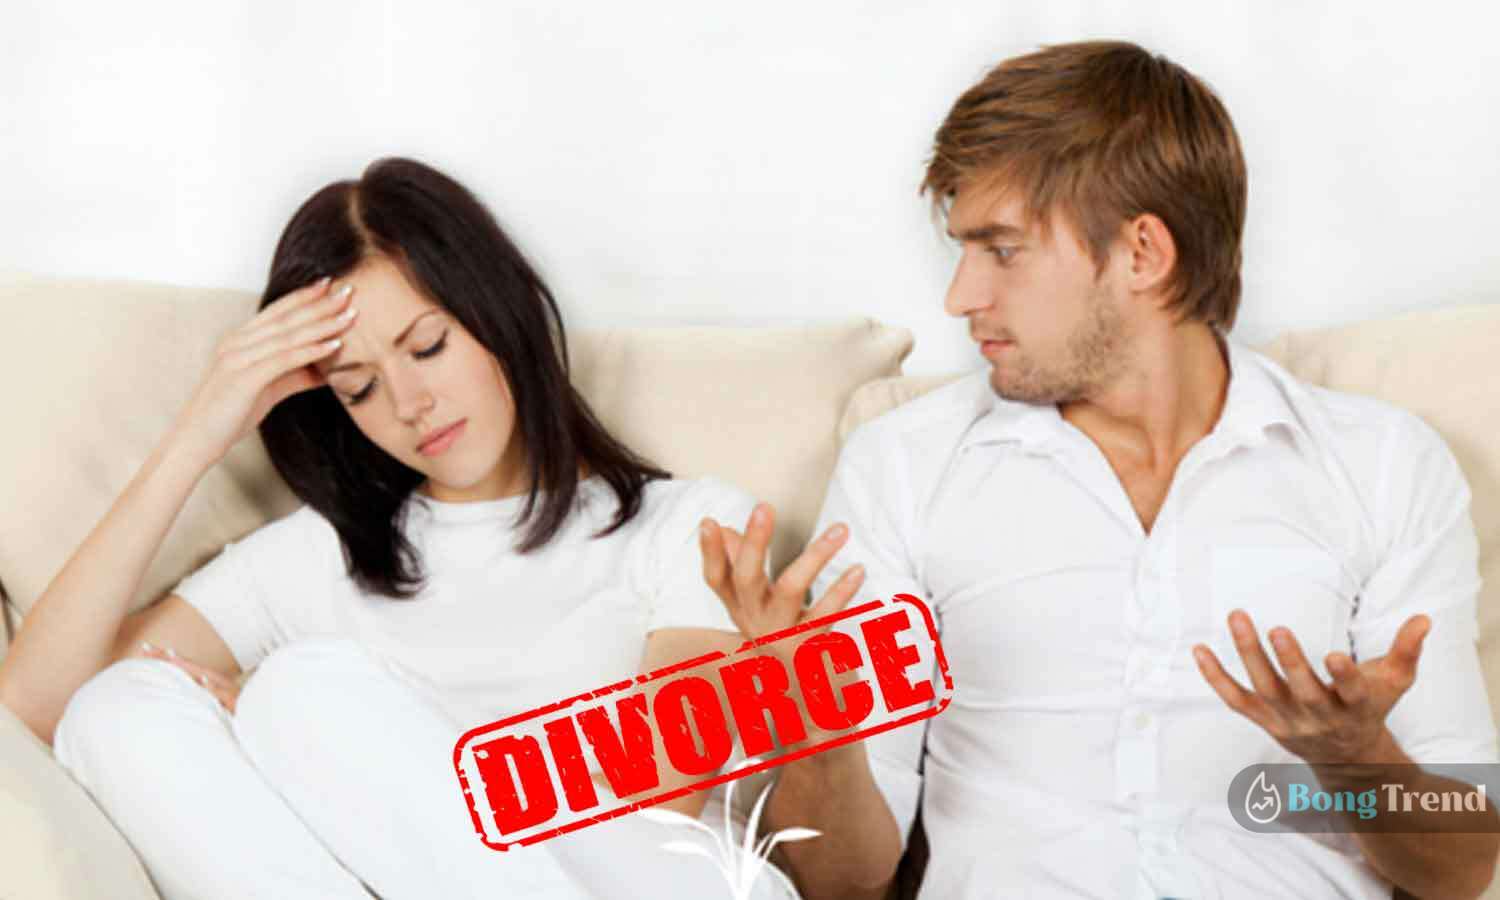 Wife Wants Divorce